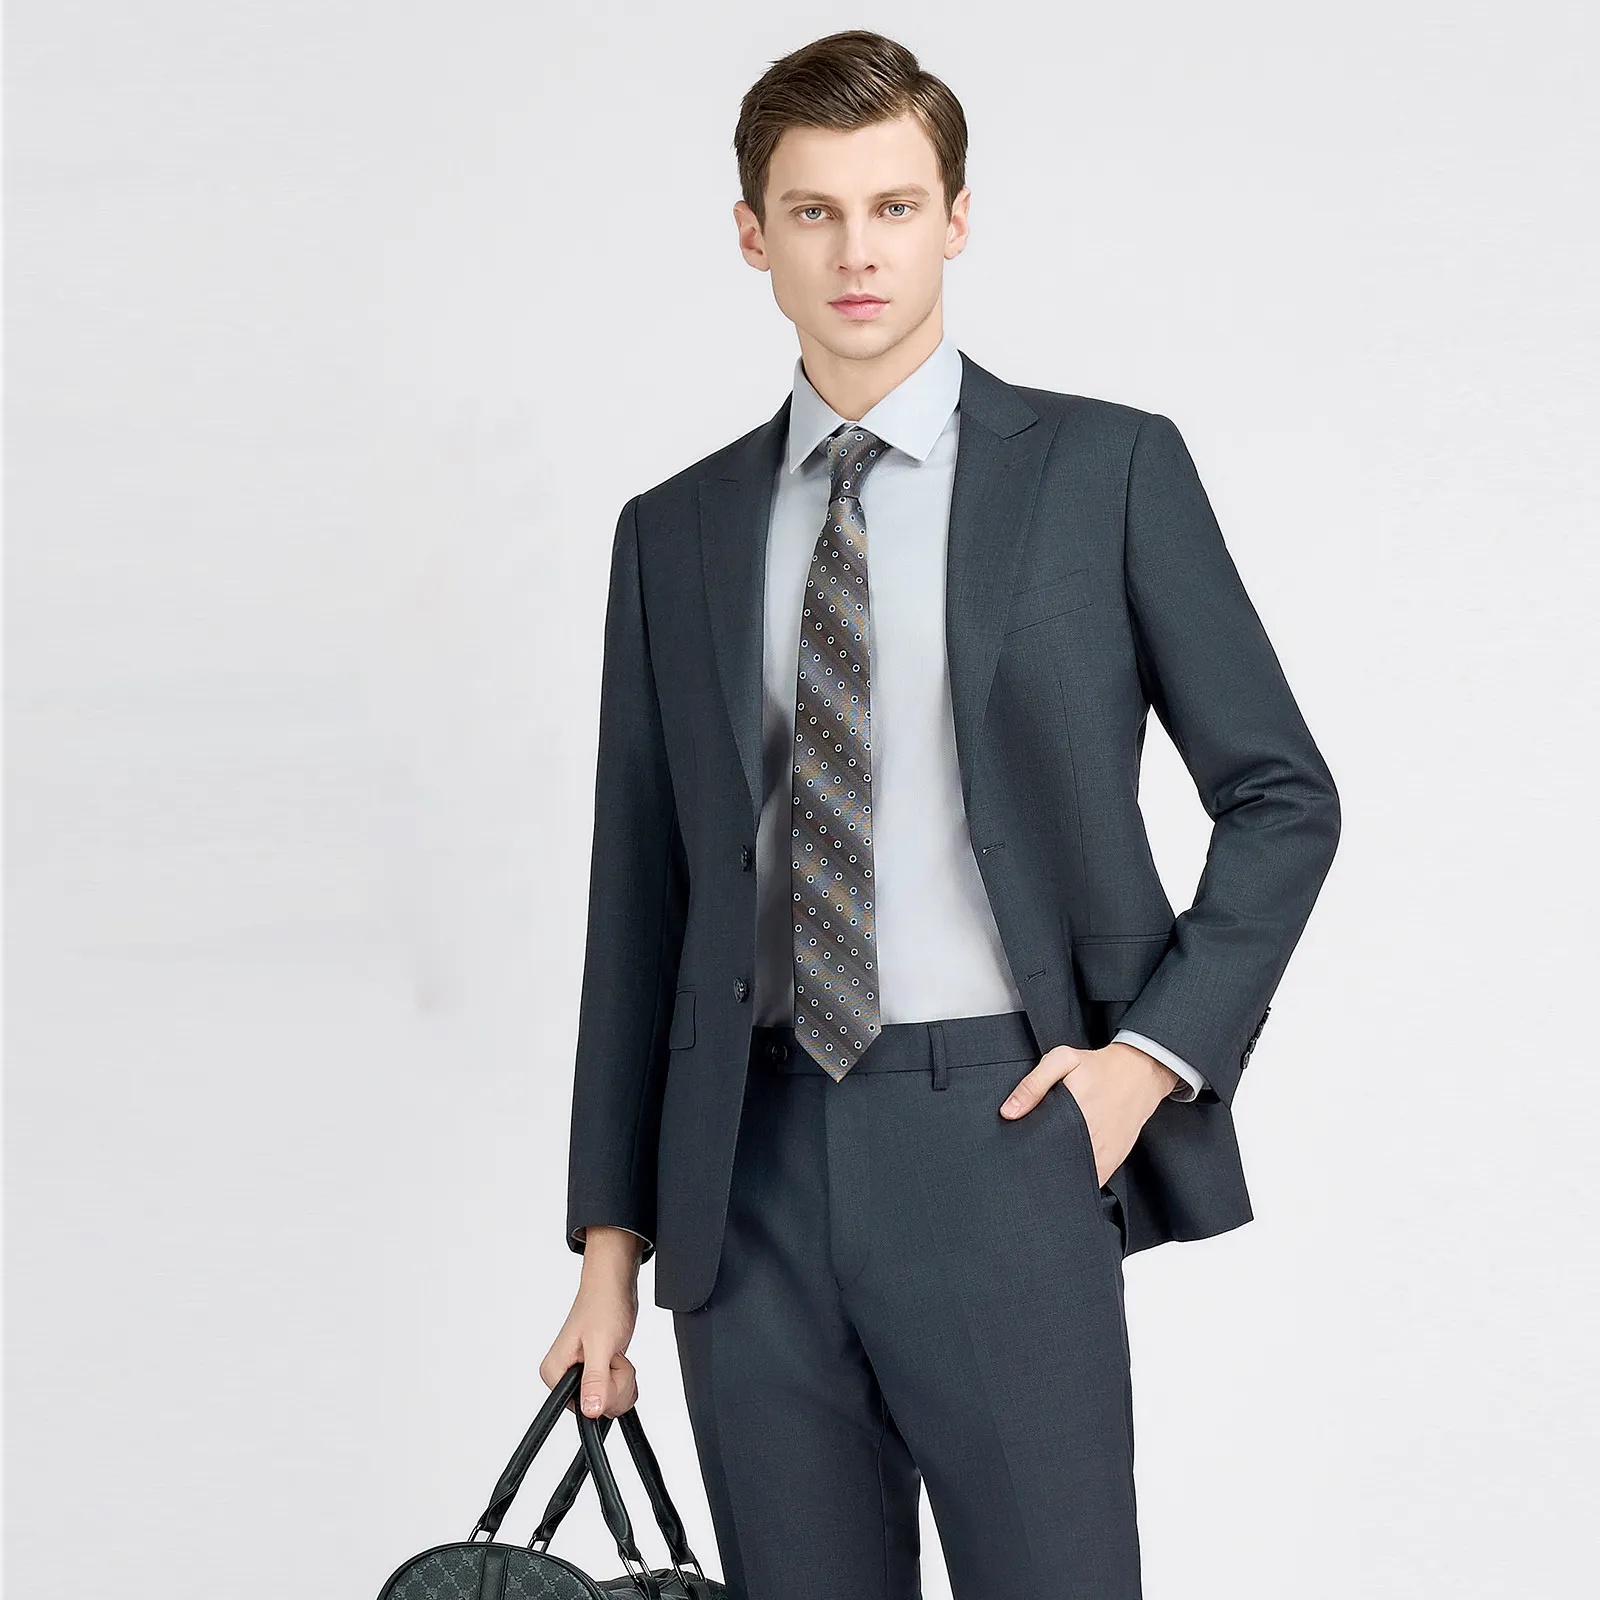 Nuevo traje personalizado de moda para hombres 70% abrigo de lana gris Senior Business hombres trajes y blazer con botón de función transpirable Fly